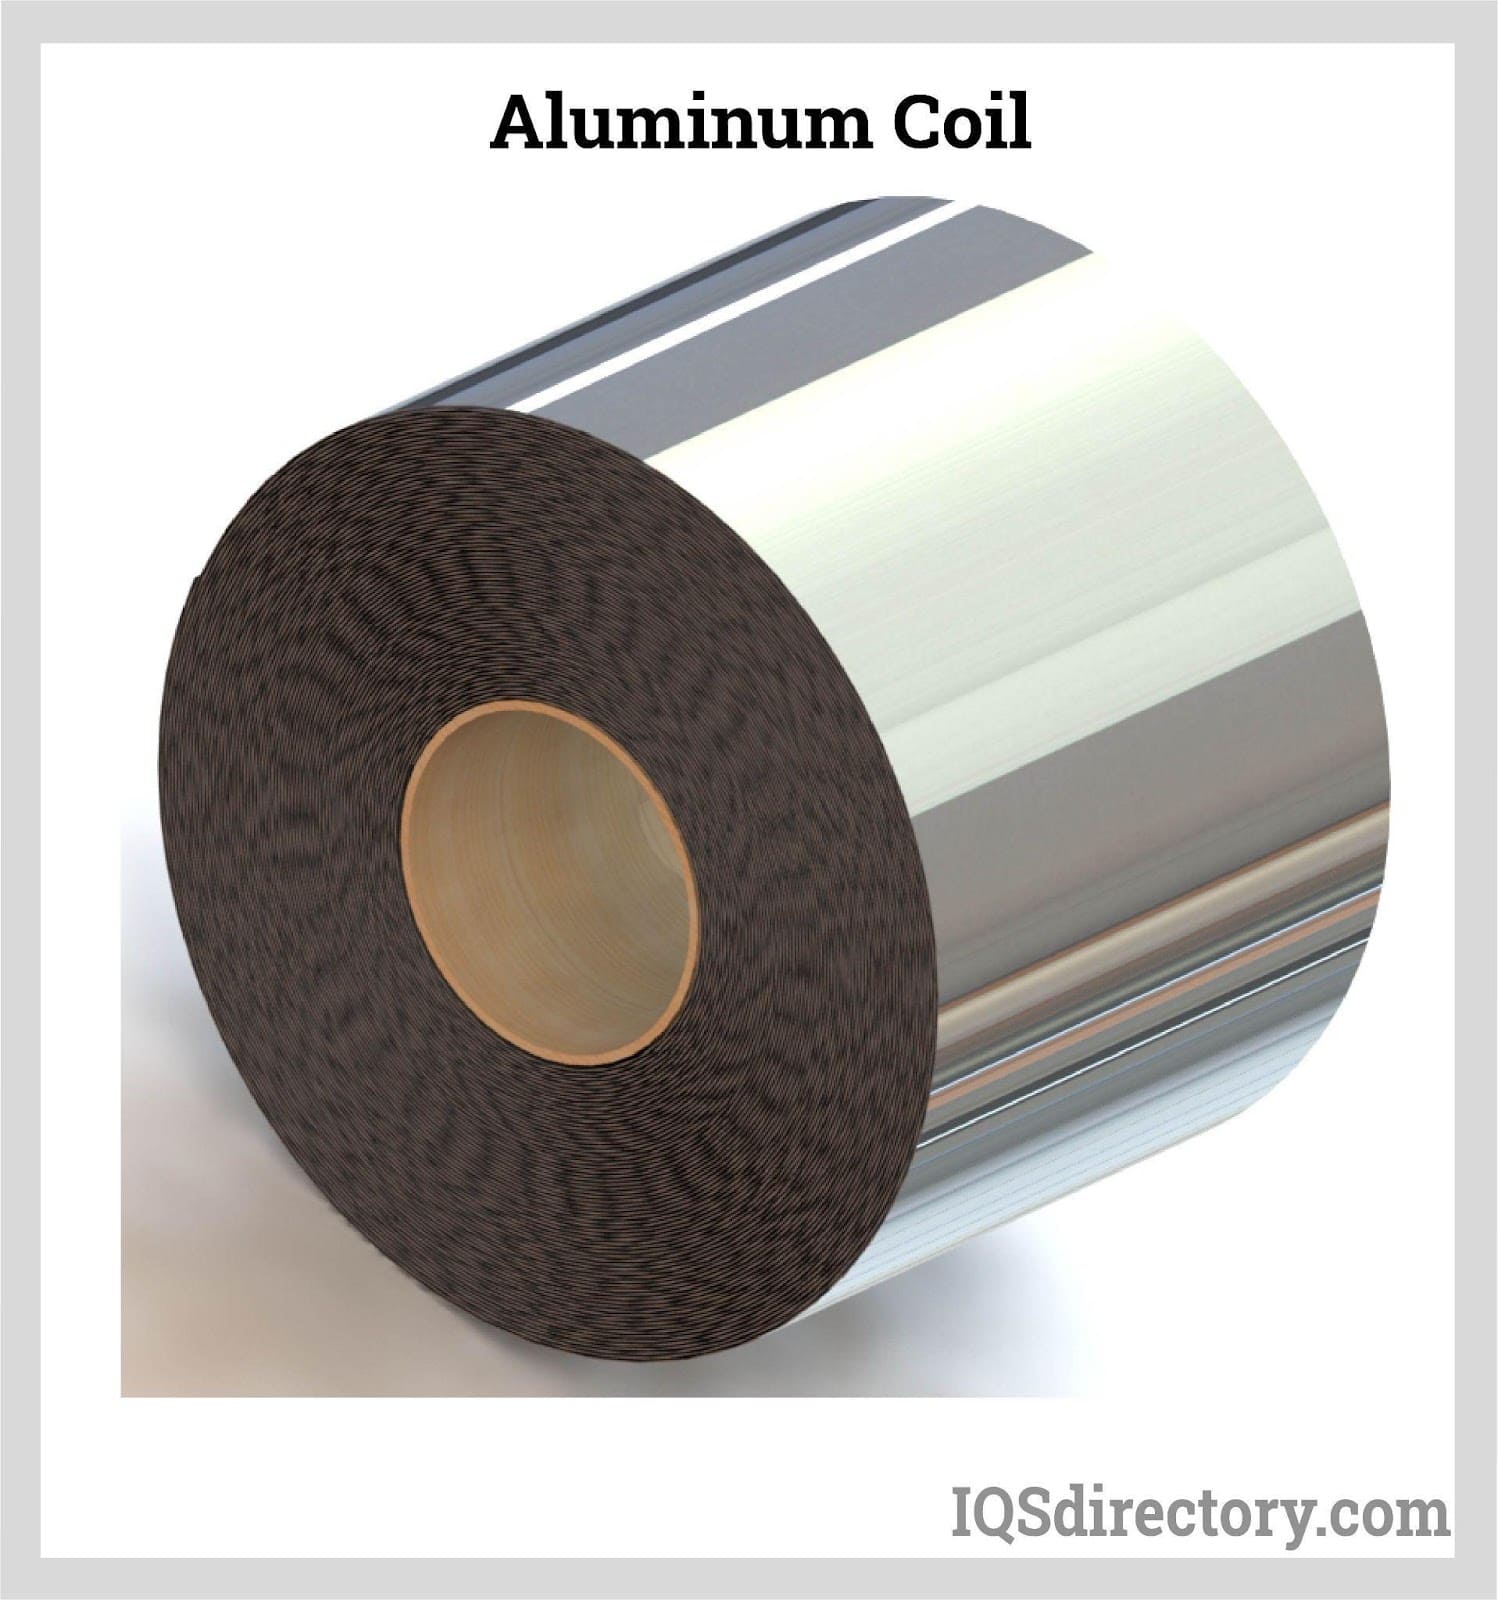 Aluminum Coil: Characteristics, Types, Grade, Applications, and Advantages